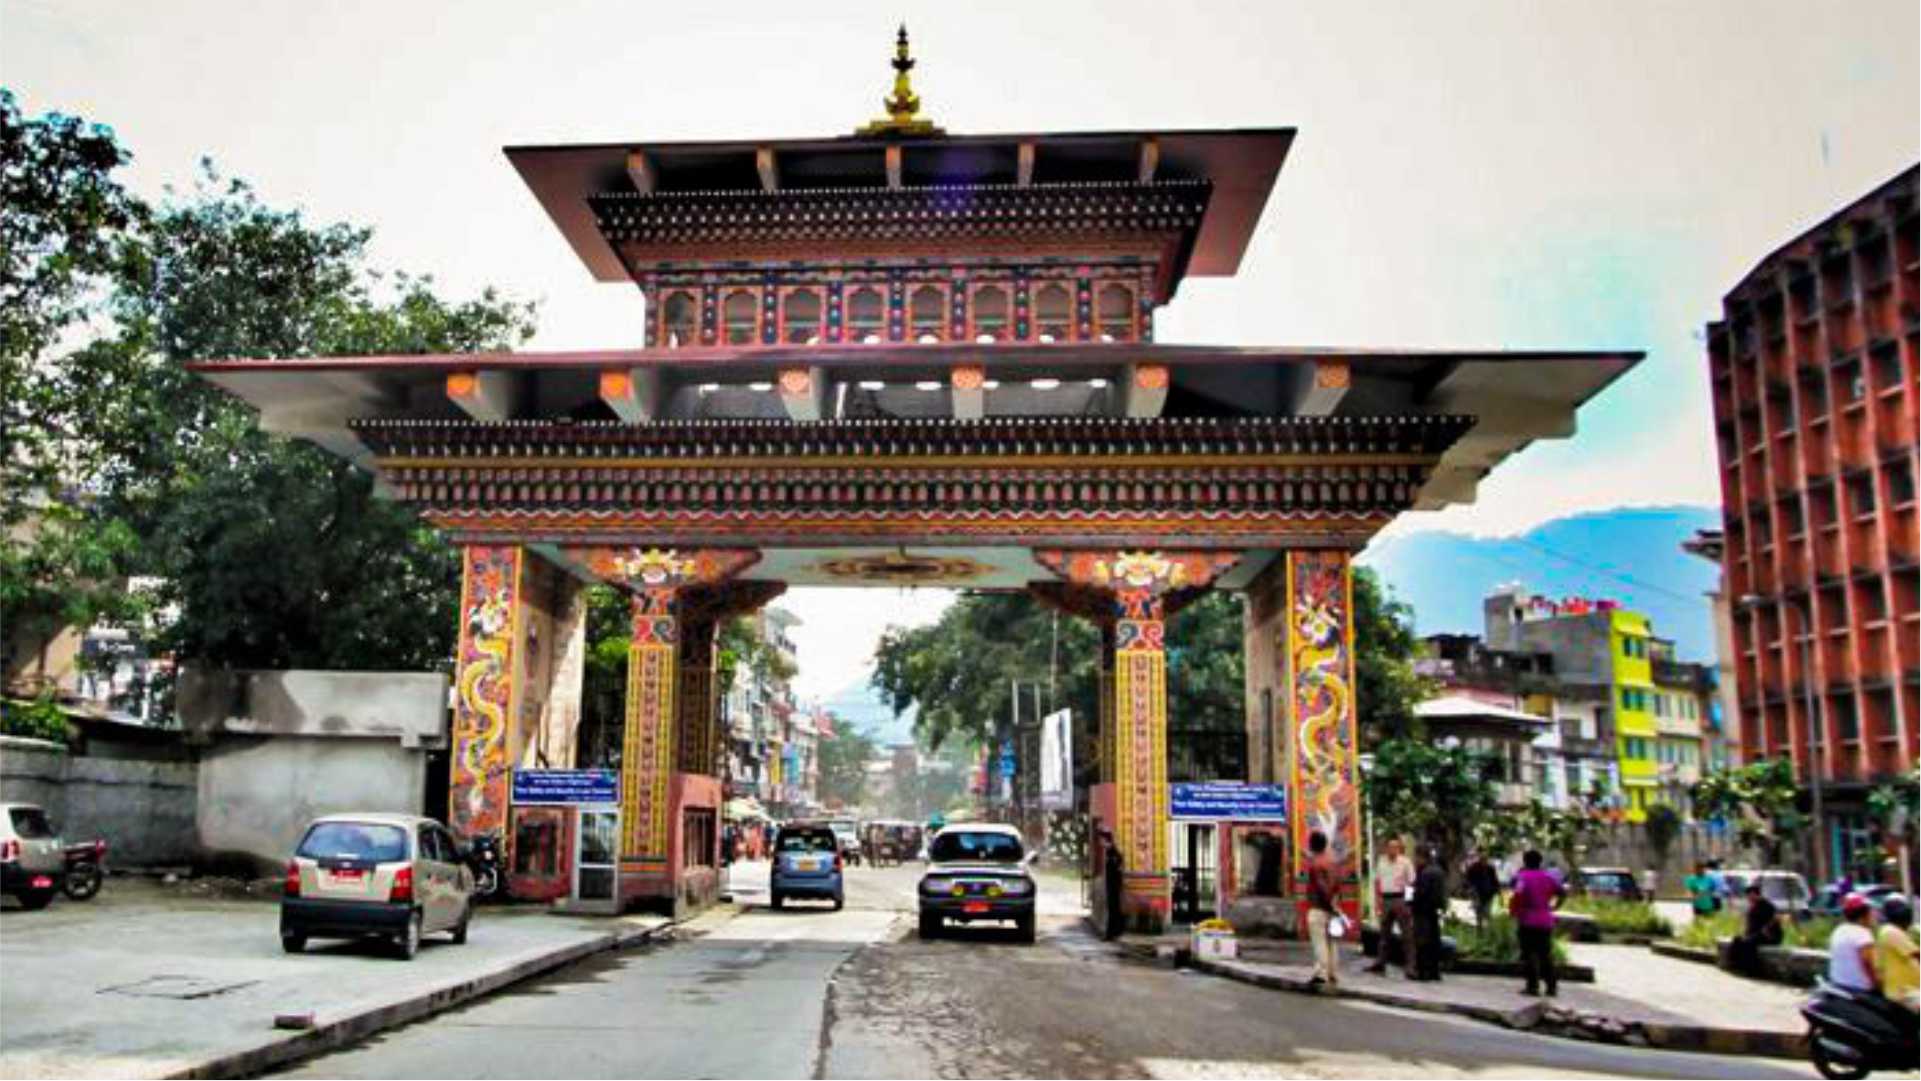 Gateway to Bhutan 1 Night / 2 Days